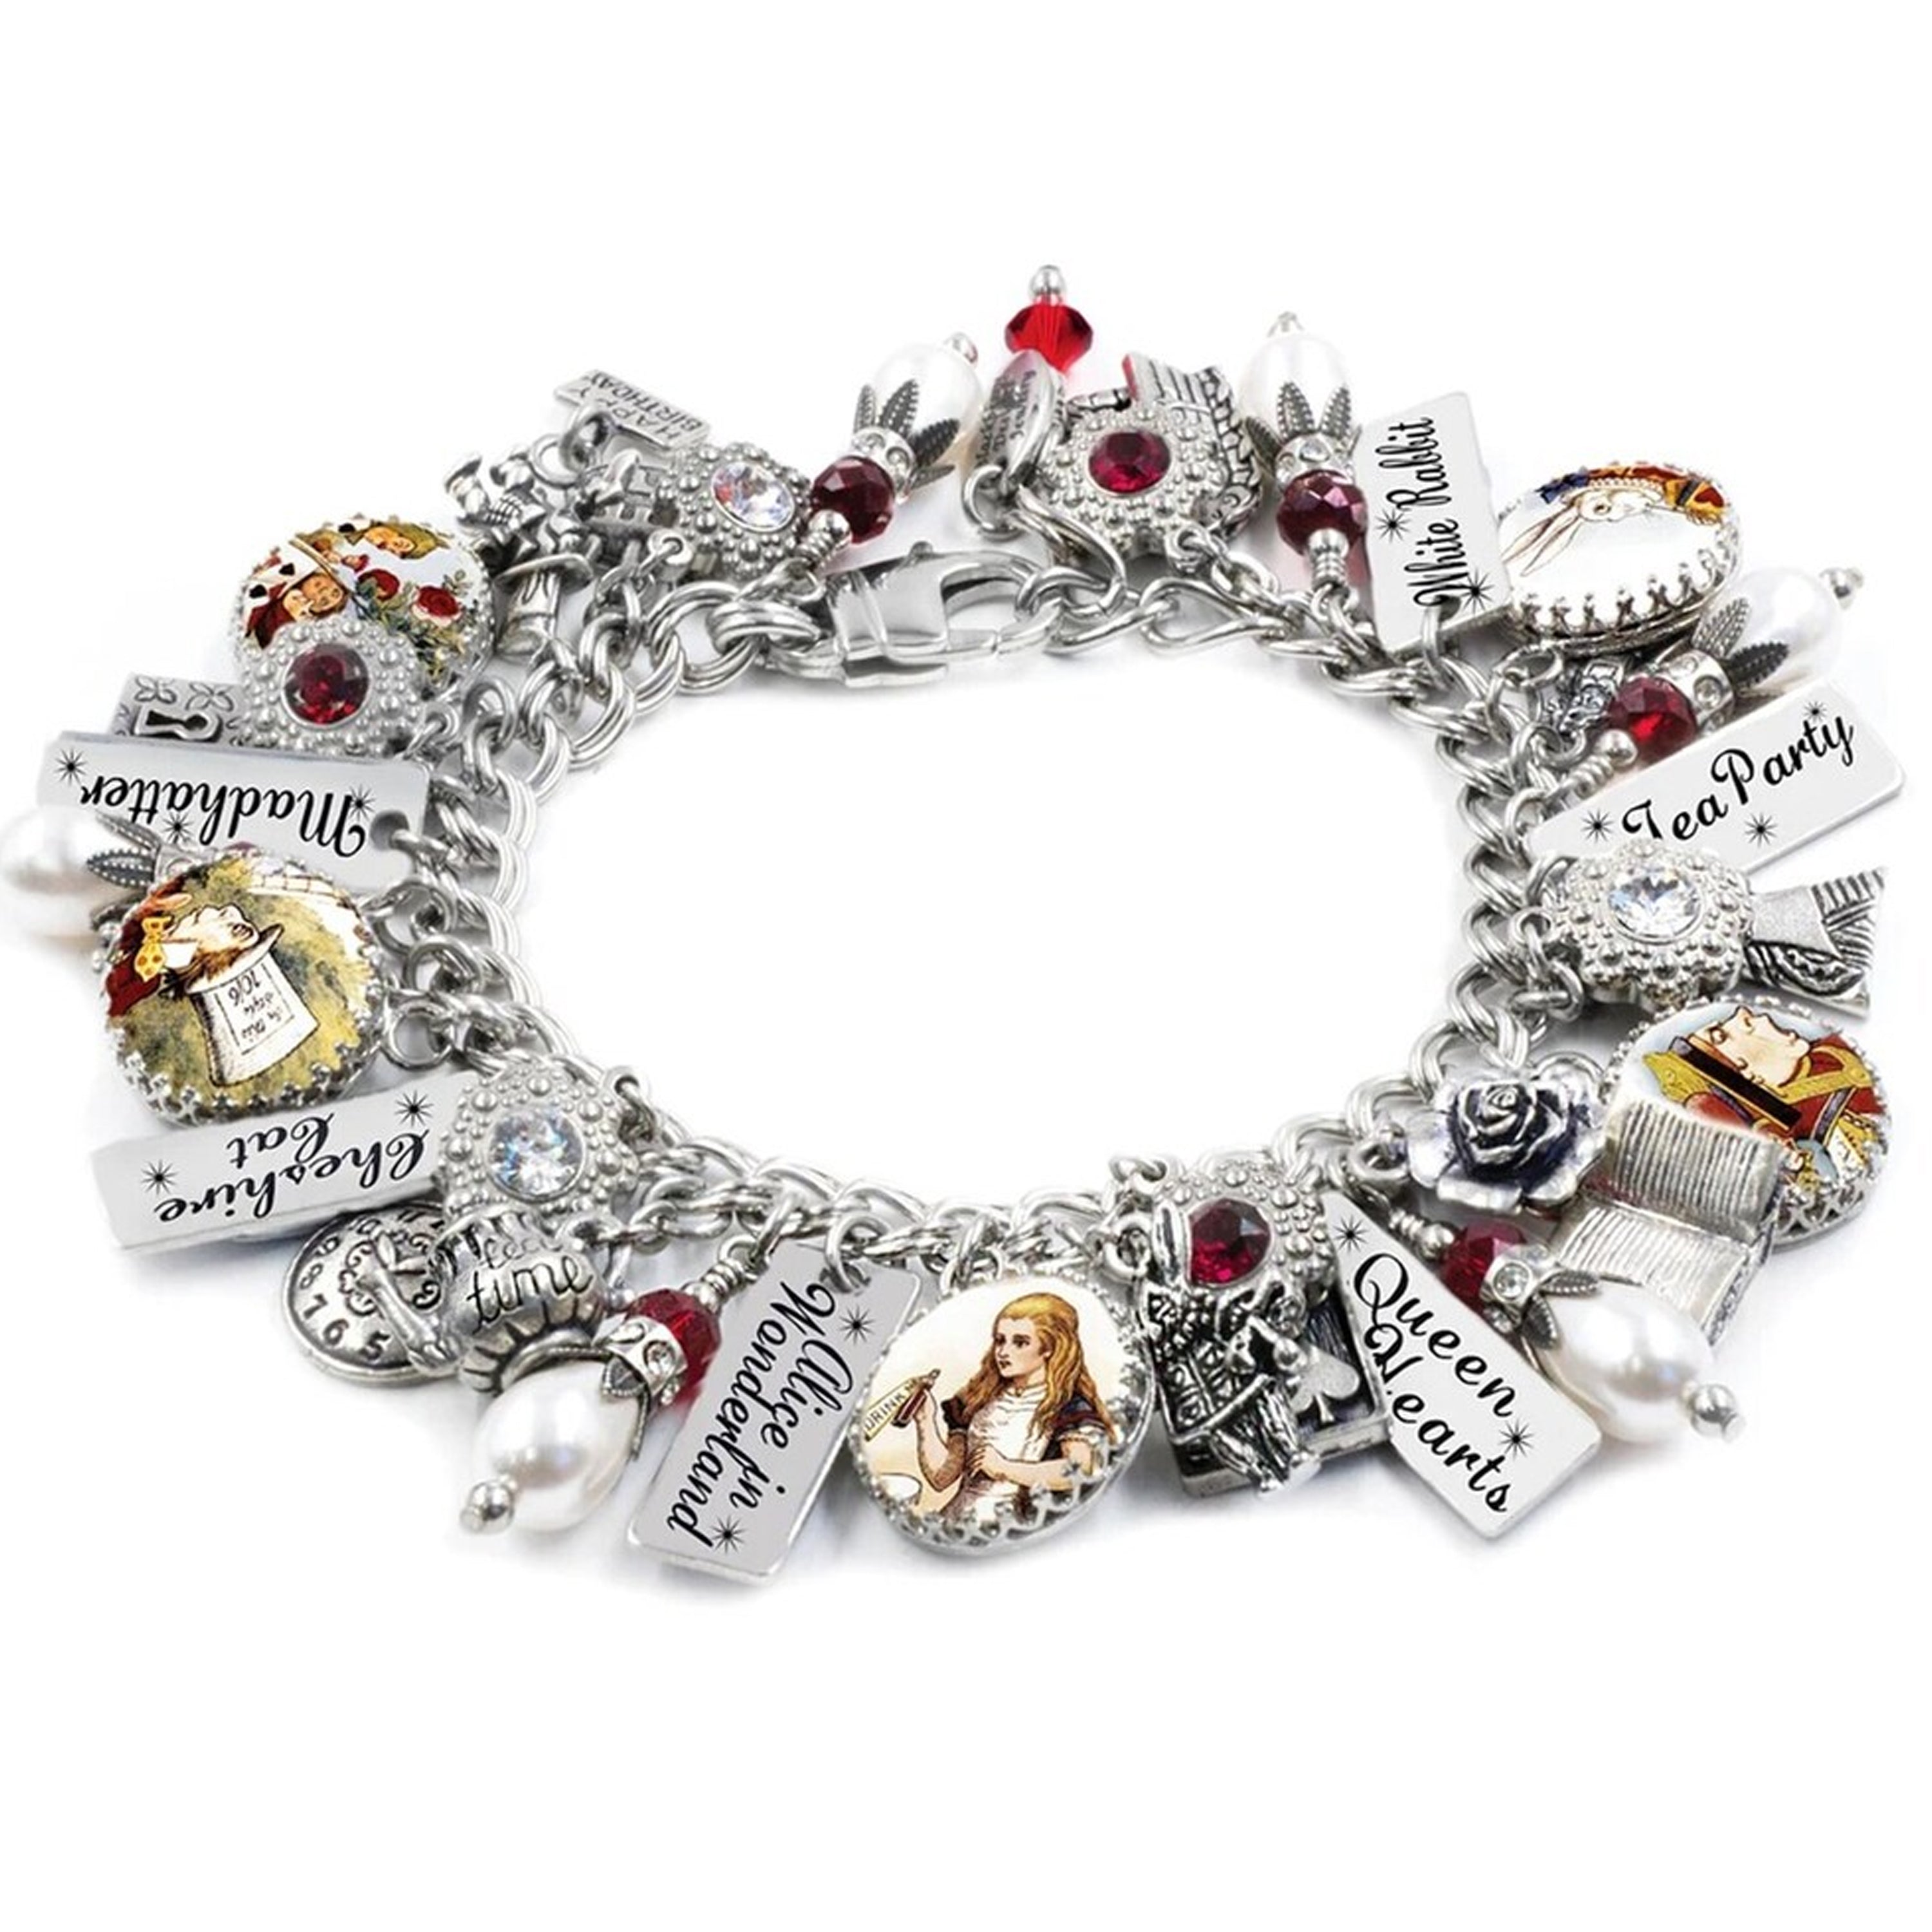 Alice in Wonderland + Stainless Steel + Charm Bracelets + Women's + Charm Bracelets